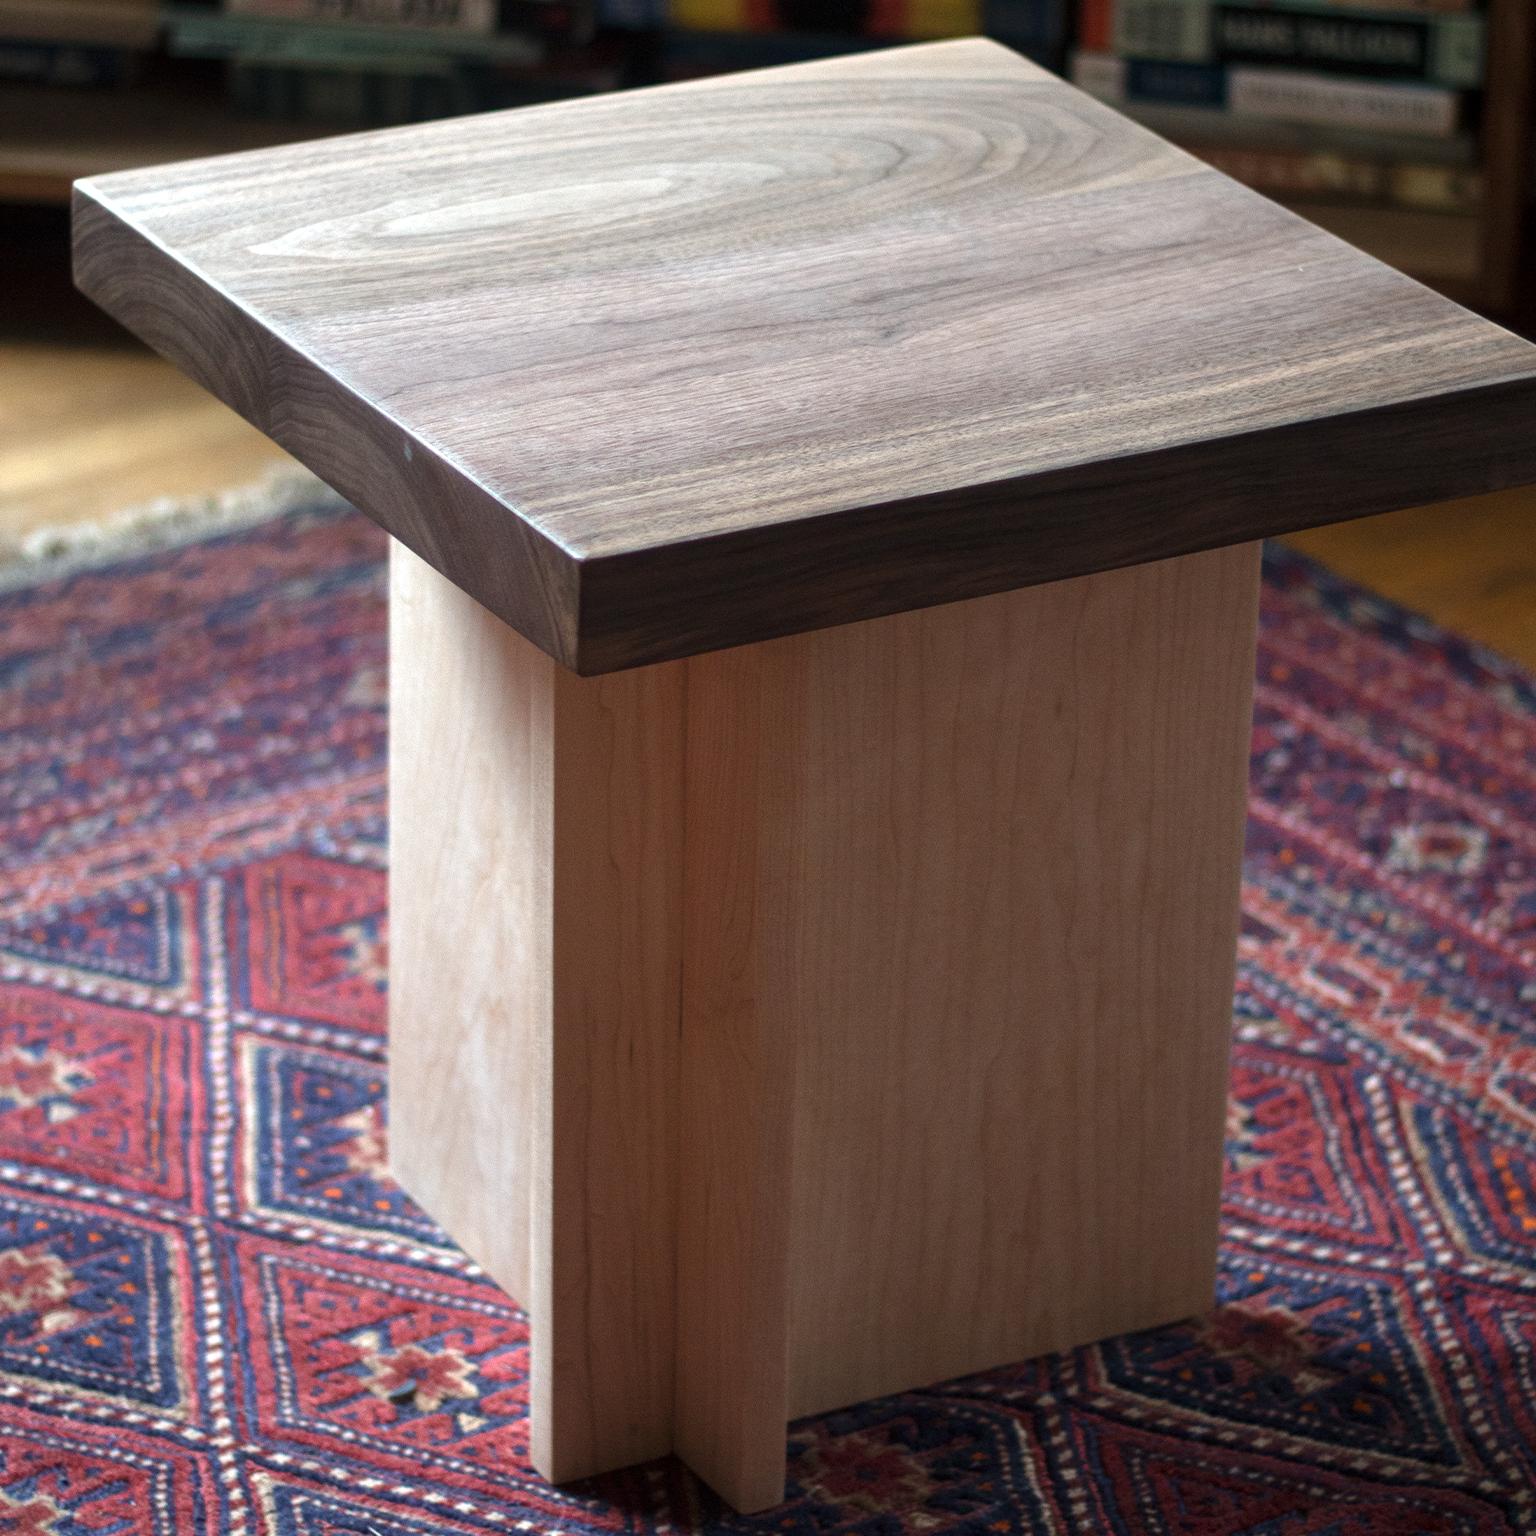 Il s'agit d'une table d'appoint ou d'un petit tabouret en noyer et érable massif. Le profil est asymétrique et architectural tout en célébrant les éléments naturels du bois. 

Personnalisable.